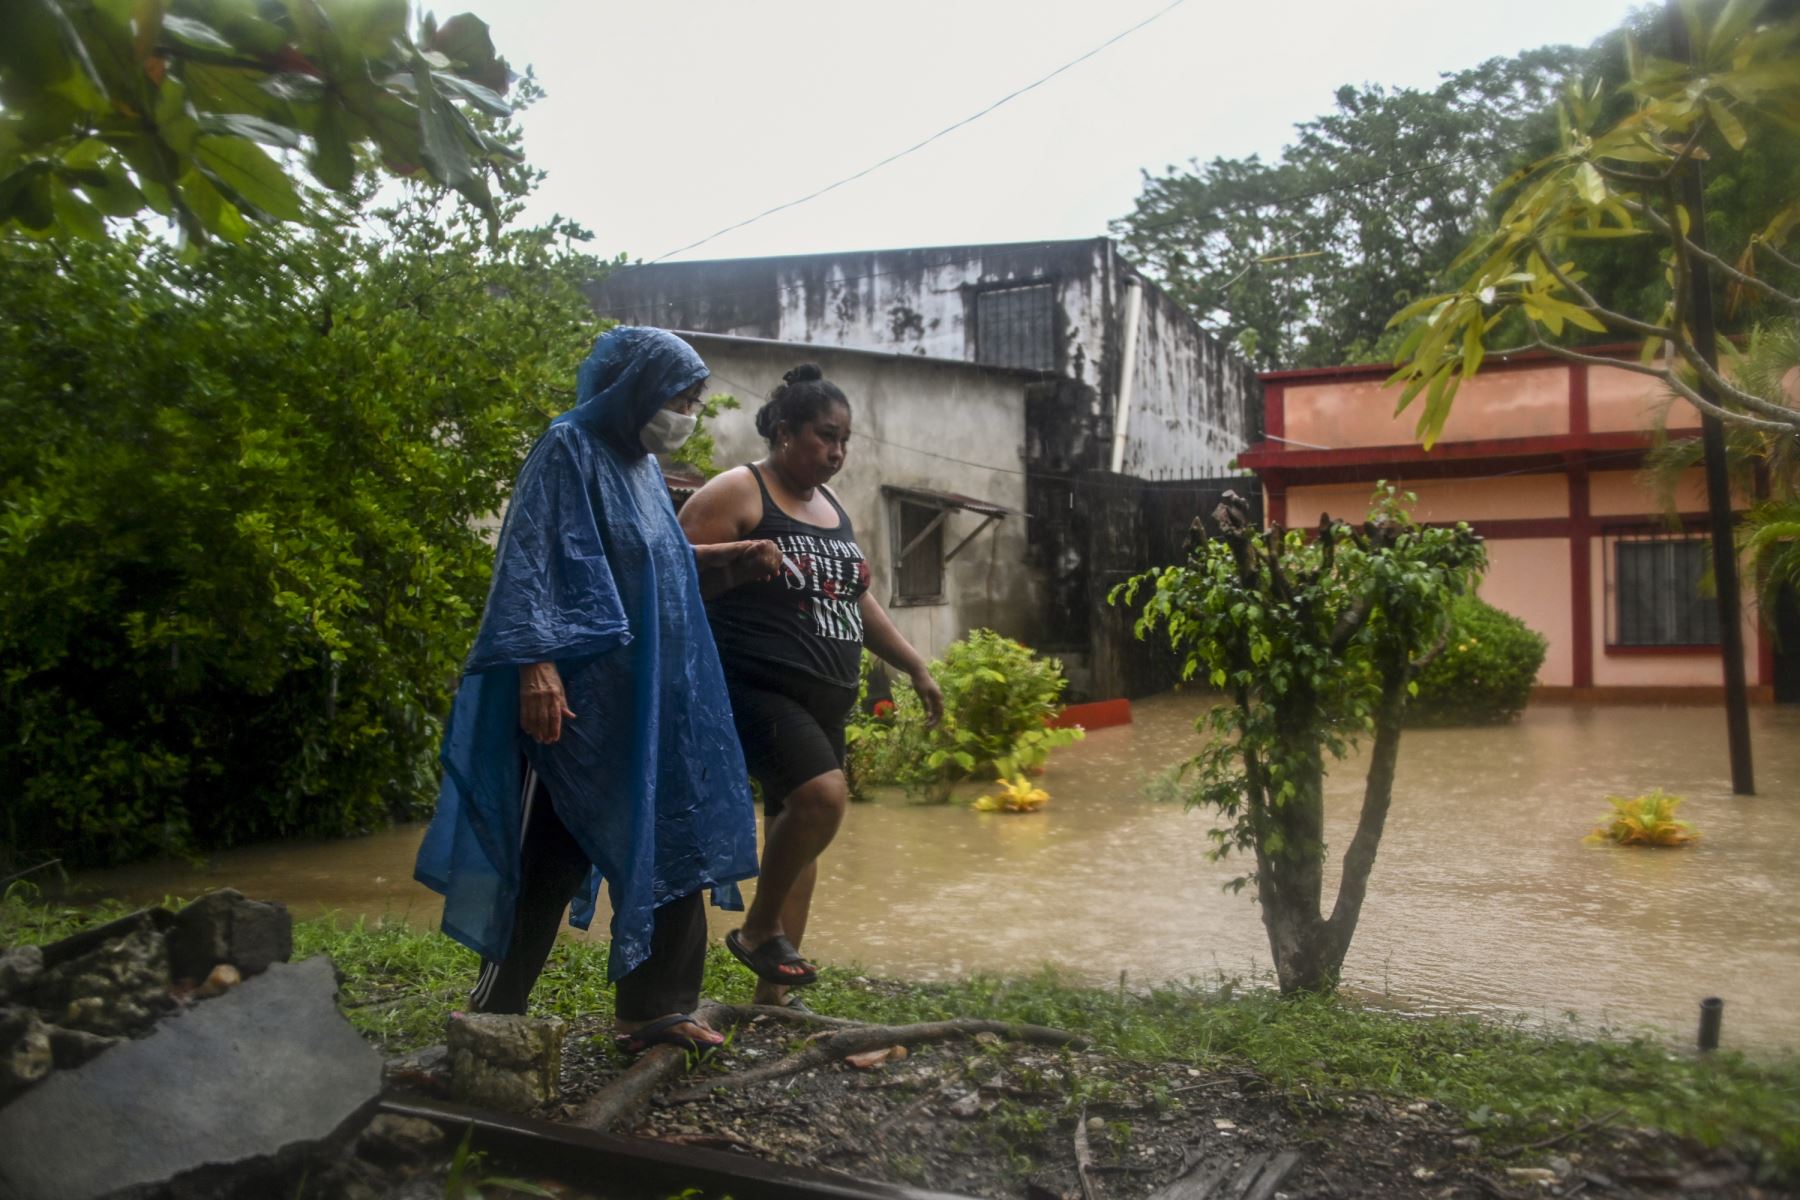 Mujeres caminan frente a una casa inundada debido a las fuertes lluvias causadas por el huracán Eta, ahora degradado a tormenta tropical, en Puerto Barrios, Izabal, 310 km al norte de la Ciudad de Guatemala.
Foto: AFP